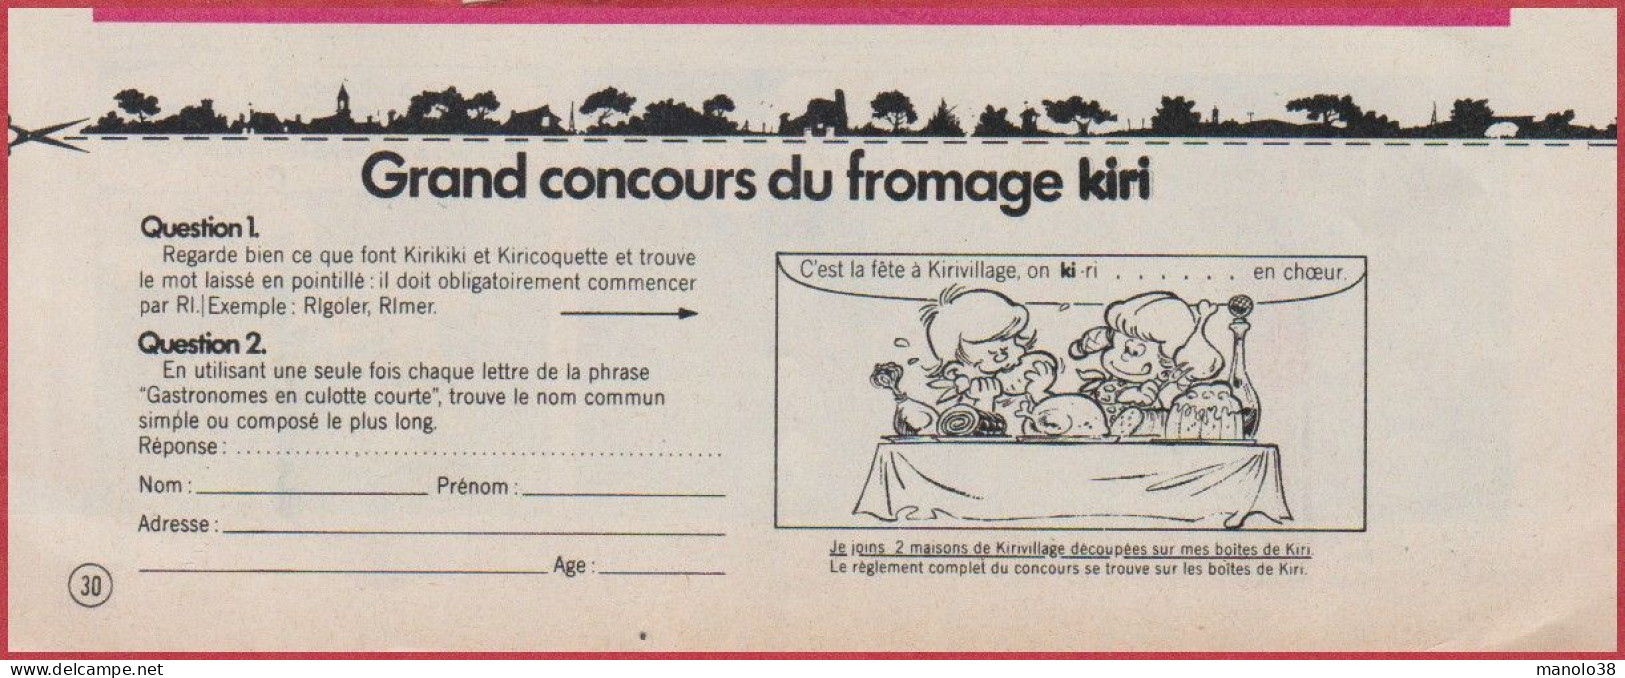 Kiri Présente Les Exploits De Kirikiki Et Kiricoquette. BD. Bande Dessinée De Roba. Concours. Fromage. 1975. - Advertising